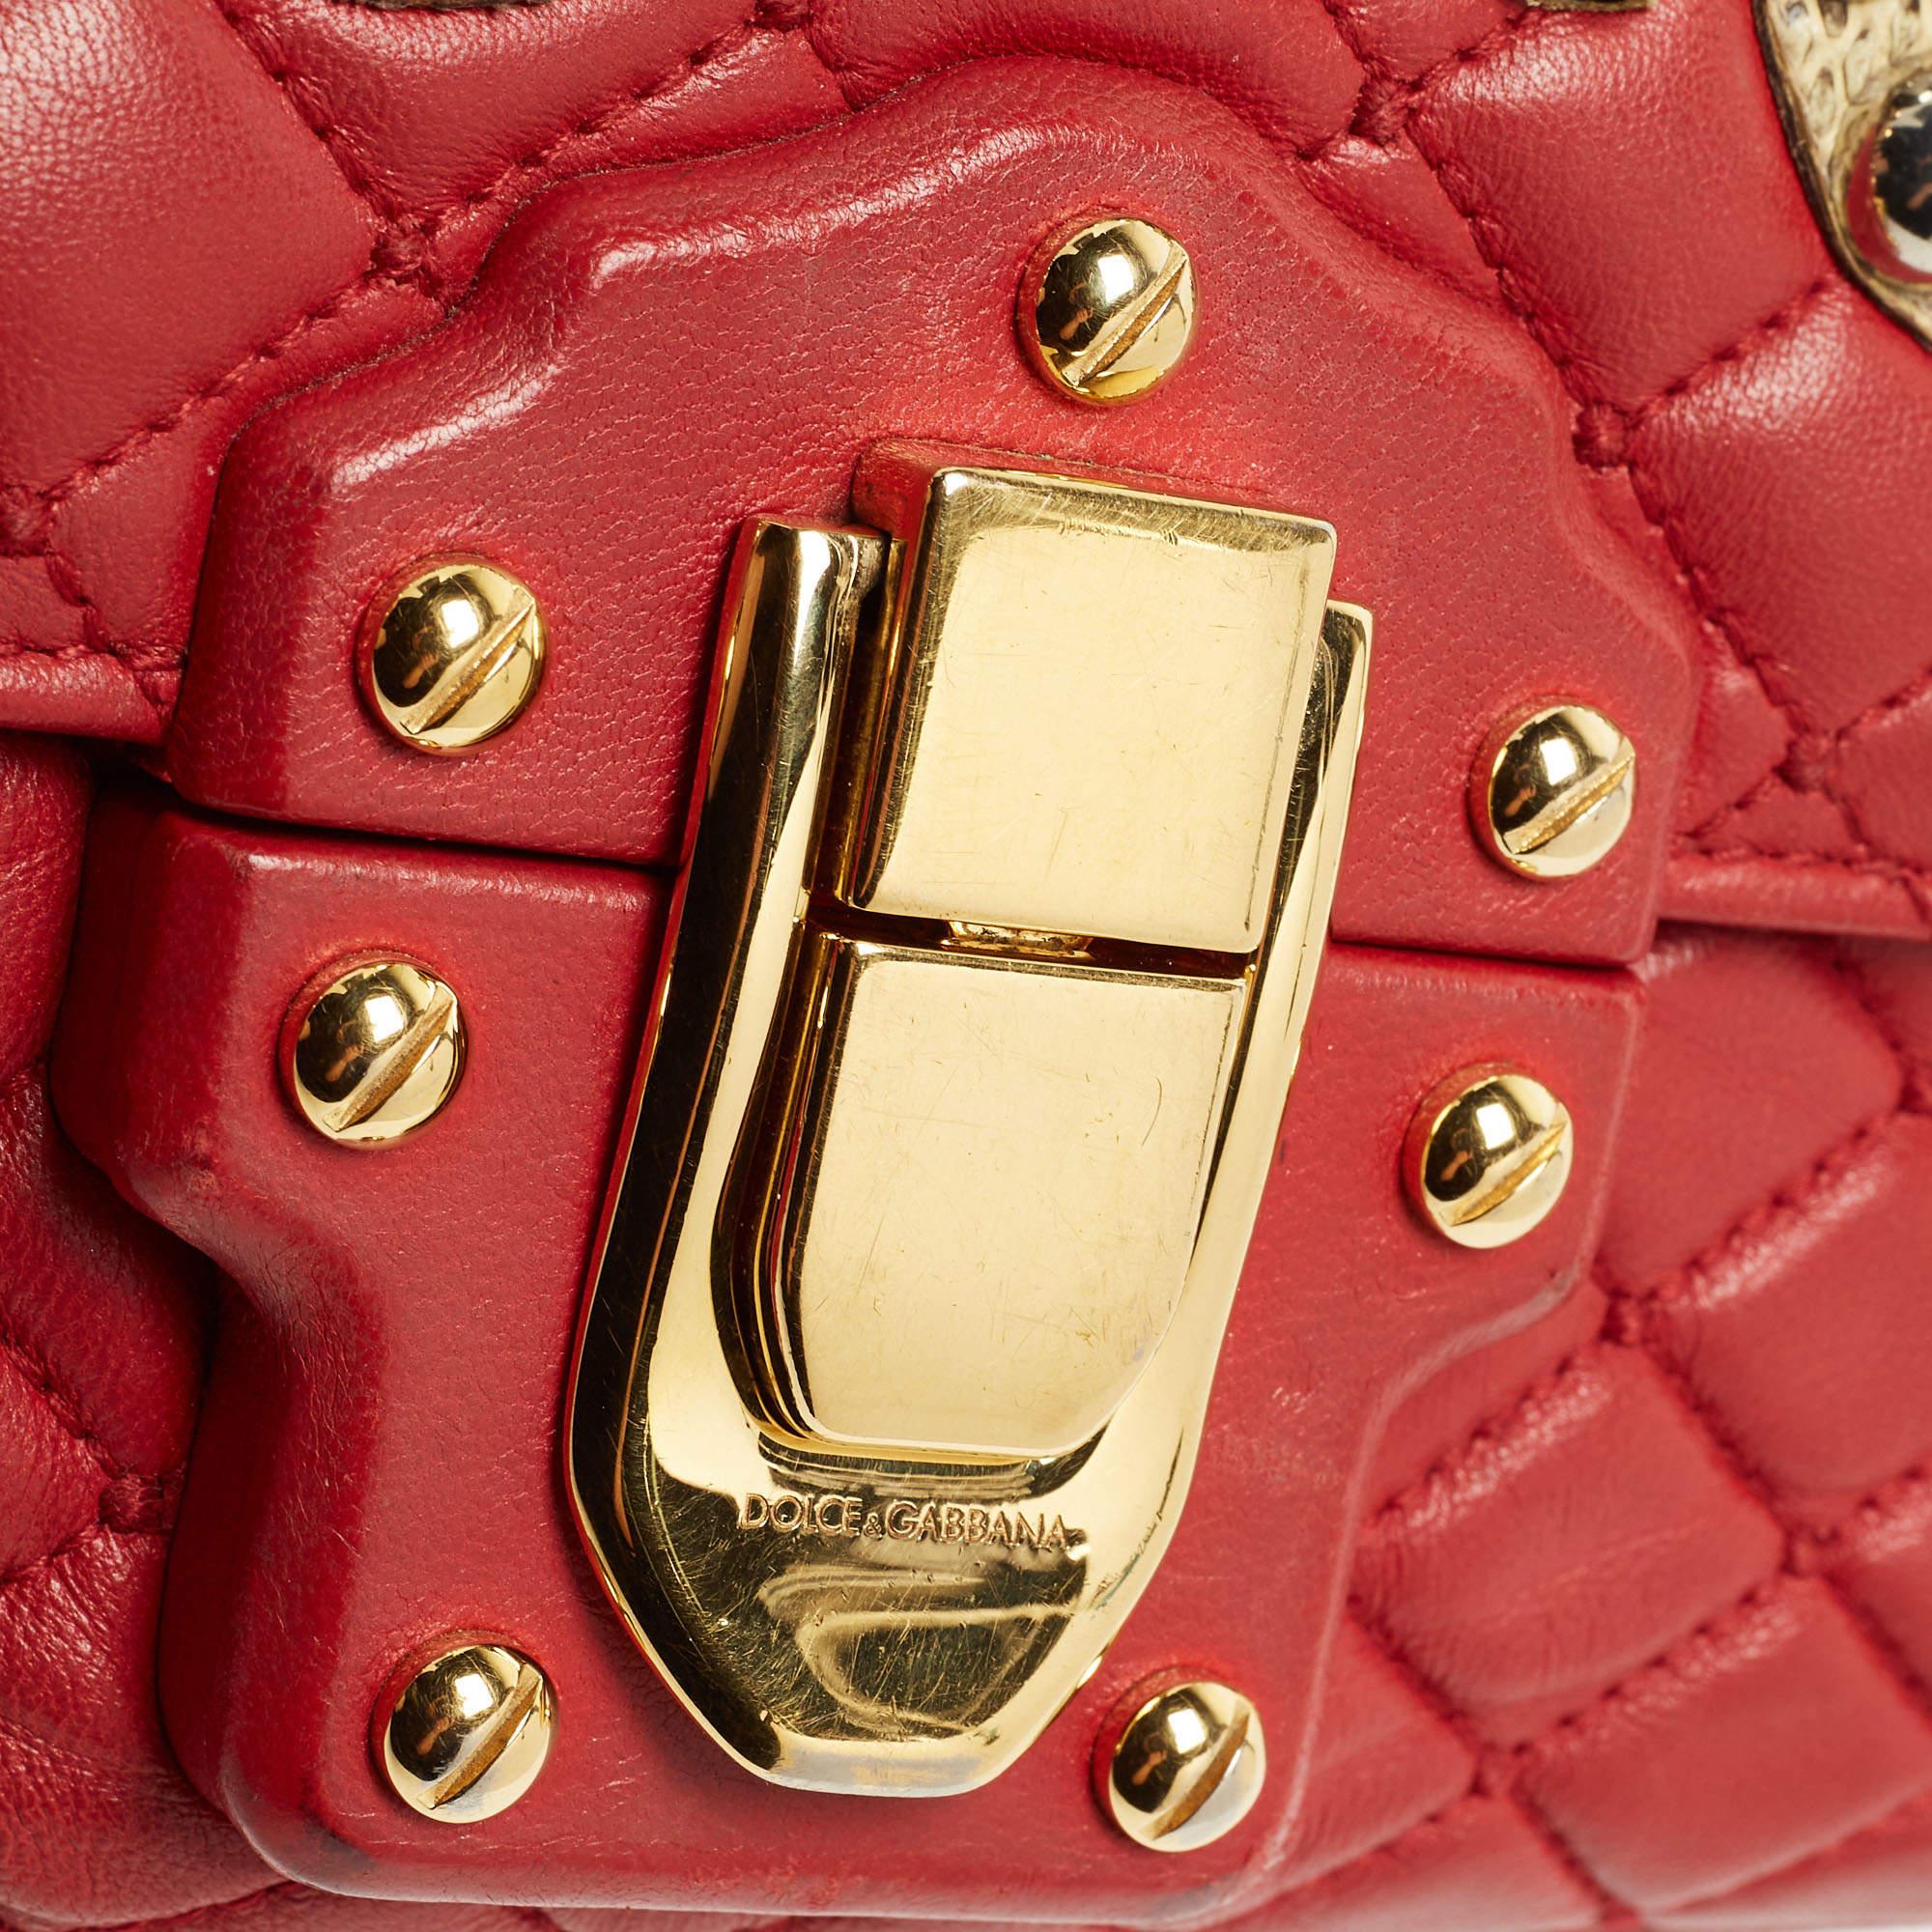 Dolce & Gabbana Red Quilted Leather Lucia Embellished Shoulder Bag 6